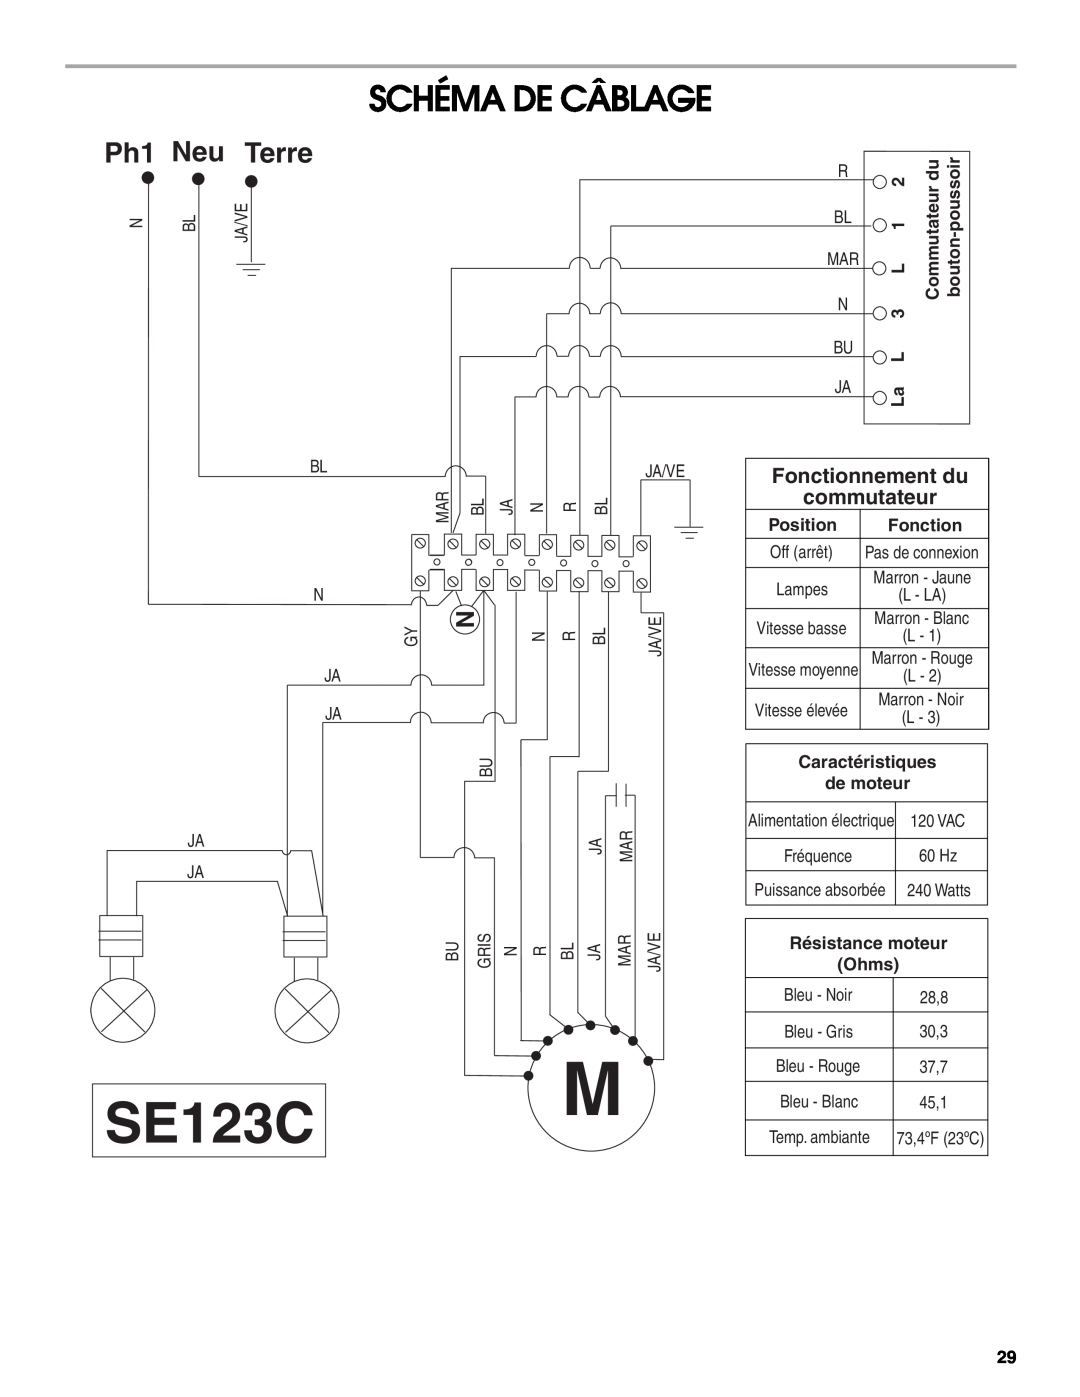 Whirlpool LI31HC/W10526058F Schéma De Câblage, Ph1 Neu Terre, Commutateur bouton, Position, Fonction, Off arrêt, SE123C 